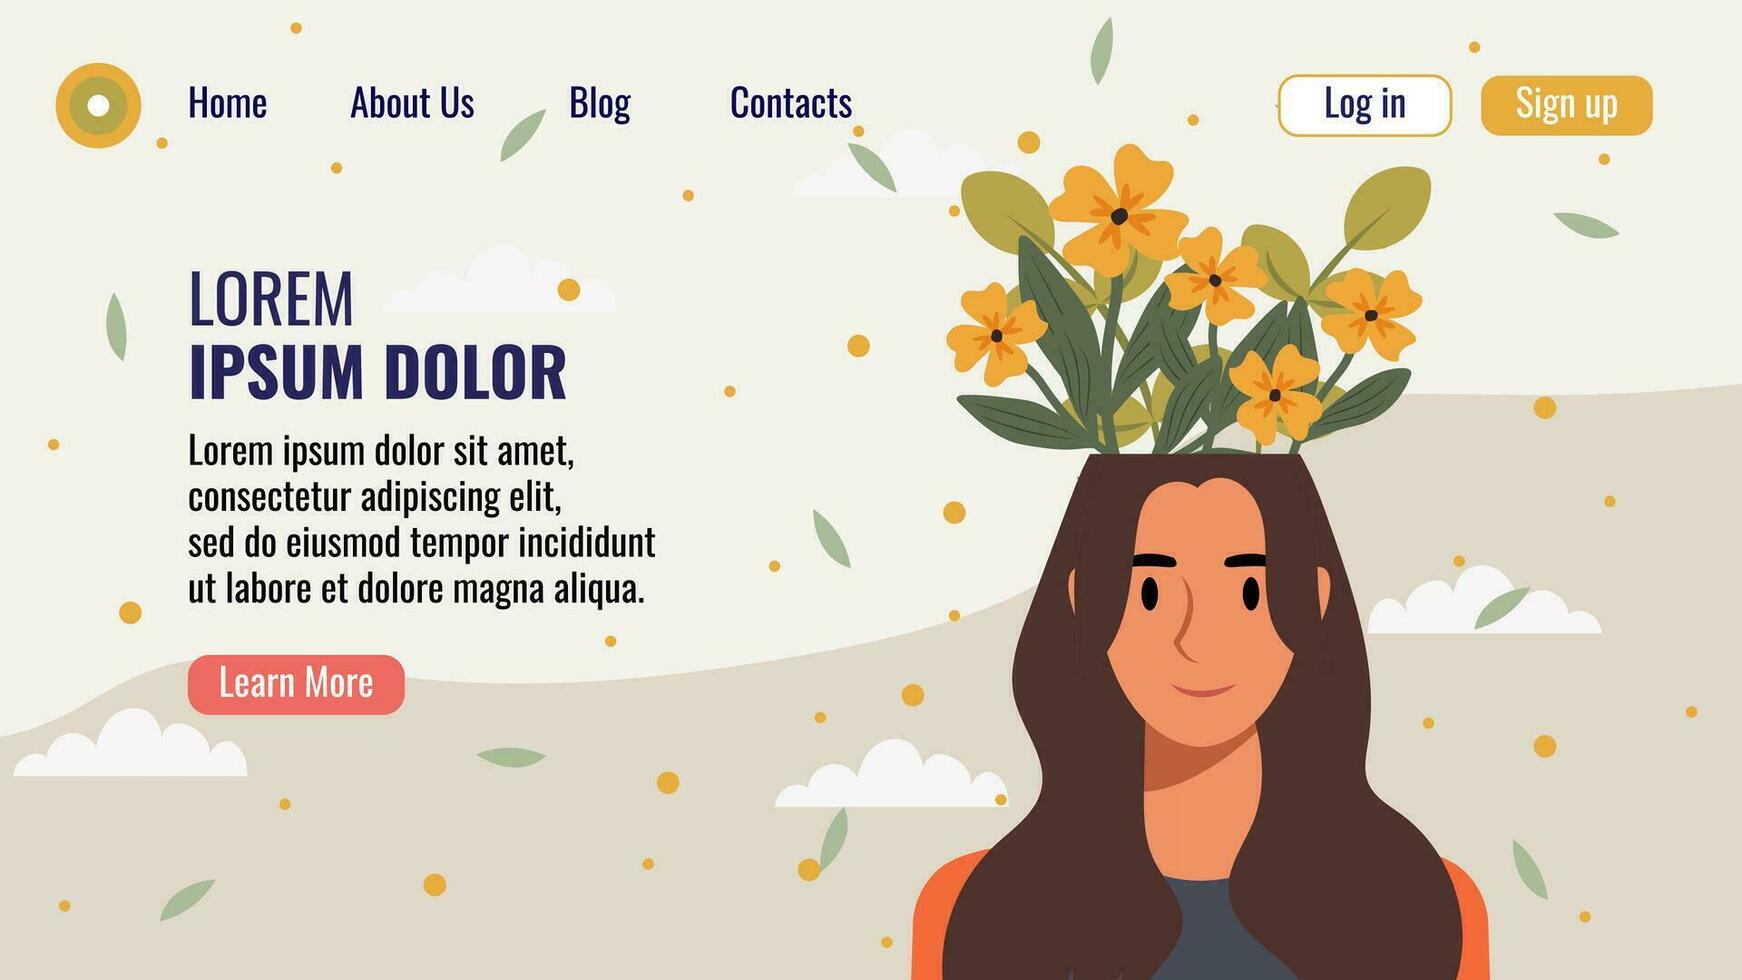 vlak ontwerp website landen bladzijde sjabloon met een portret van een vrouw met een boeket van bloemen. mentaal Gezondheid concept. vector illustratie.